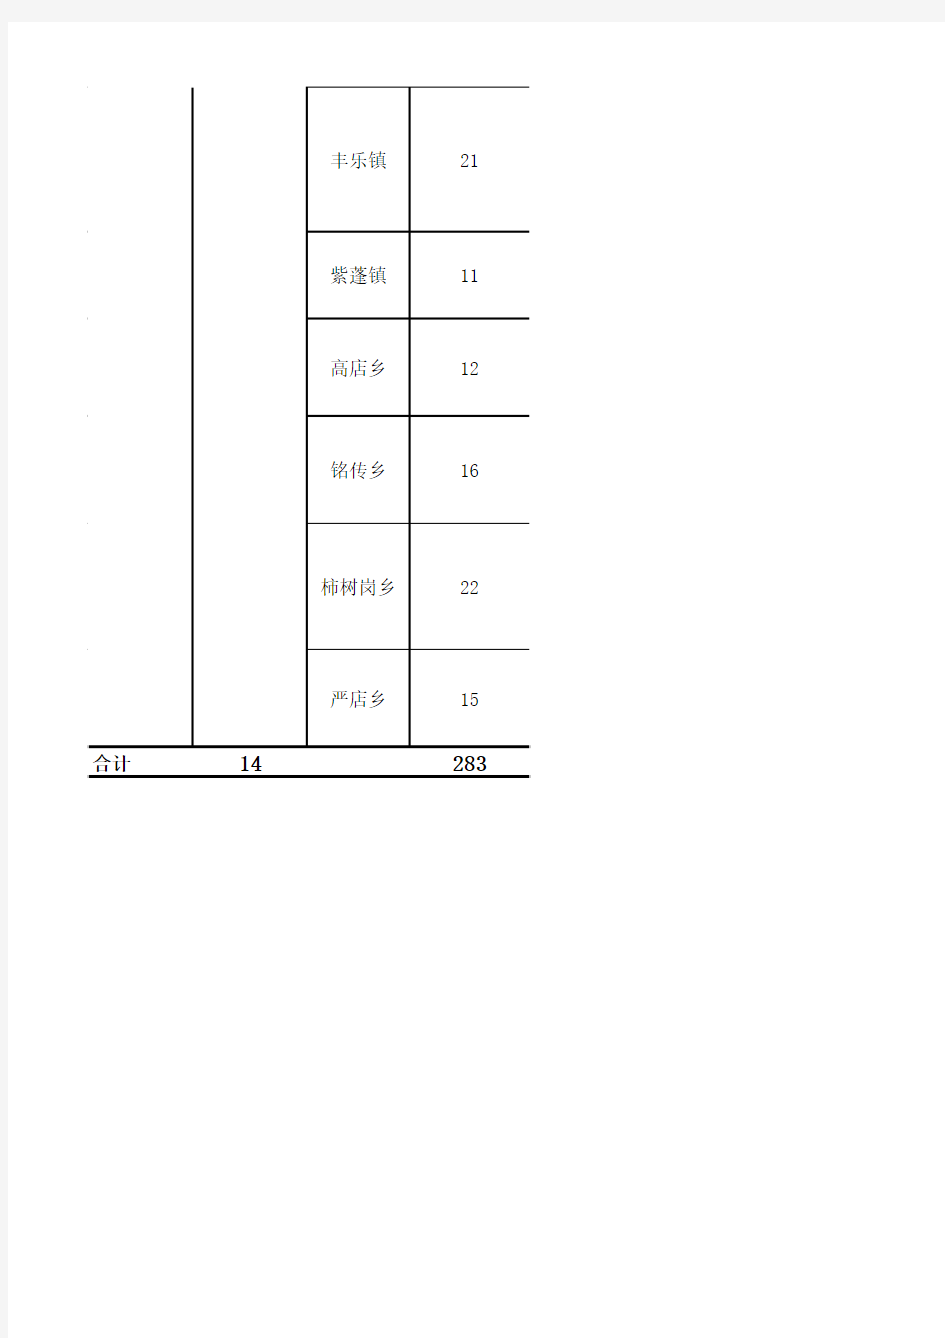 肥西县行政区划-行政村数据详表